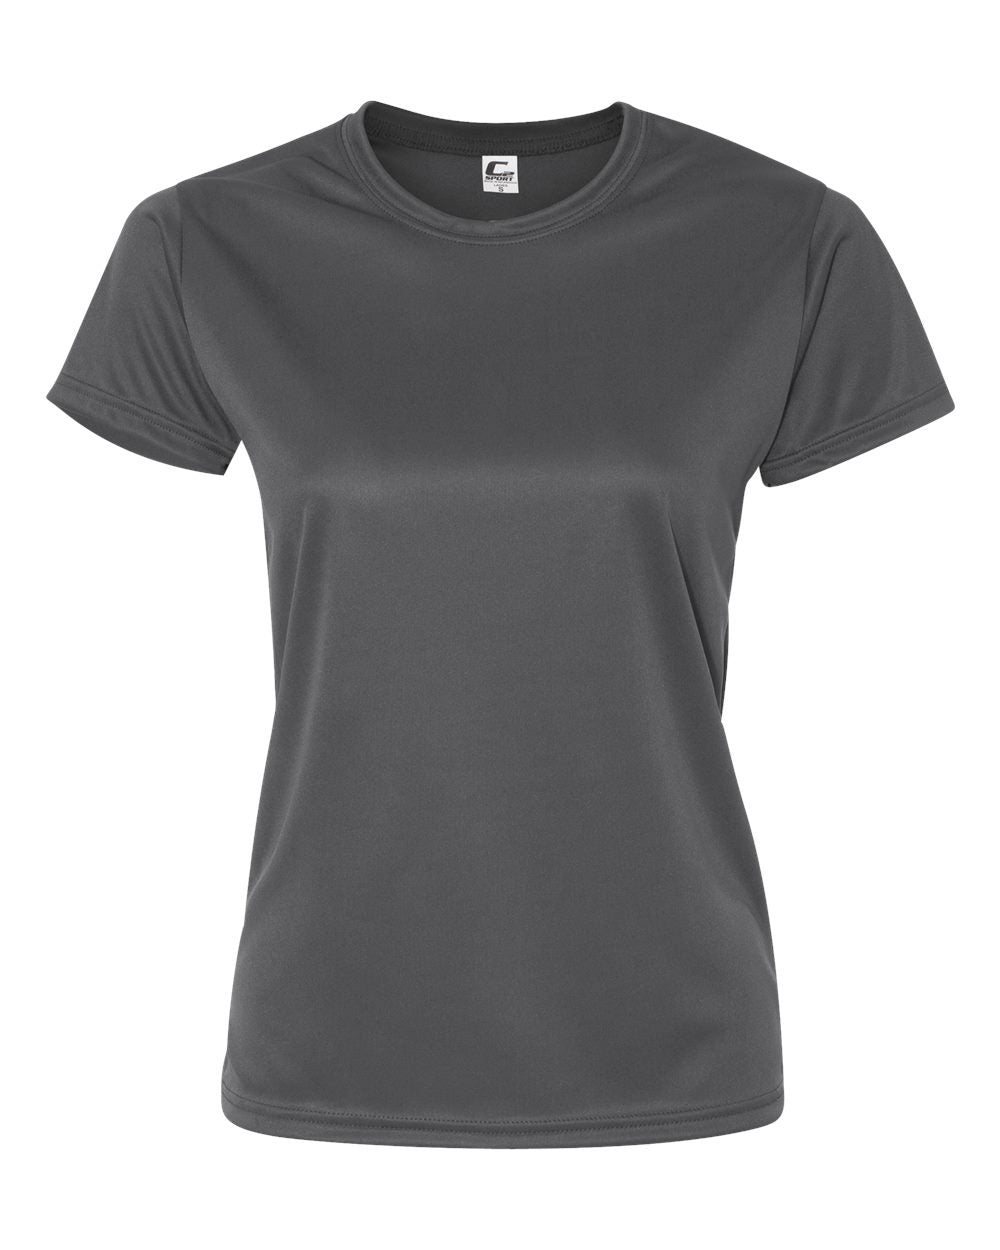 C2 Sport Women’s Performance T-Shirt 5600 #color_Graphite